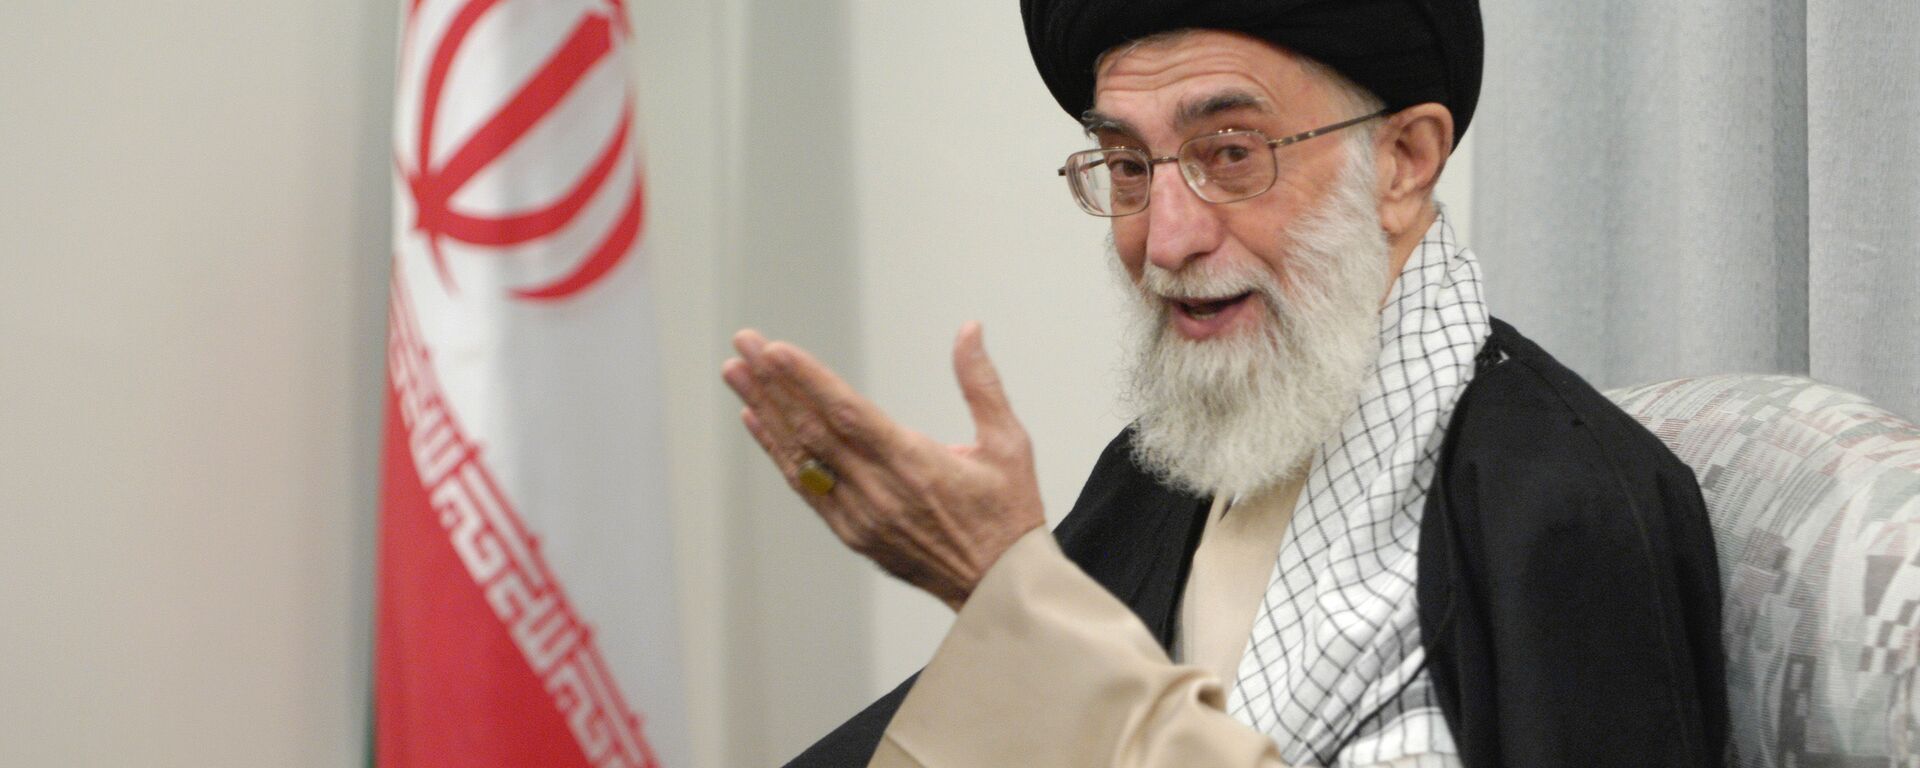 Руководитель Исламской Республики Иран аятолла Сейед Али Хаменеи  - Sputnik Արմենիա, 1920, 25.06.2021